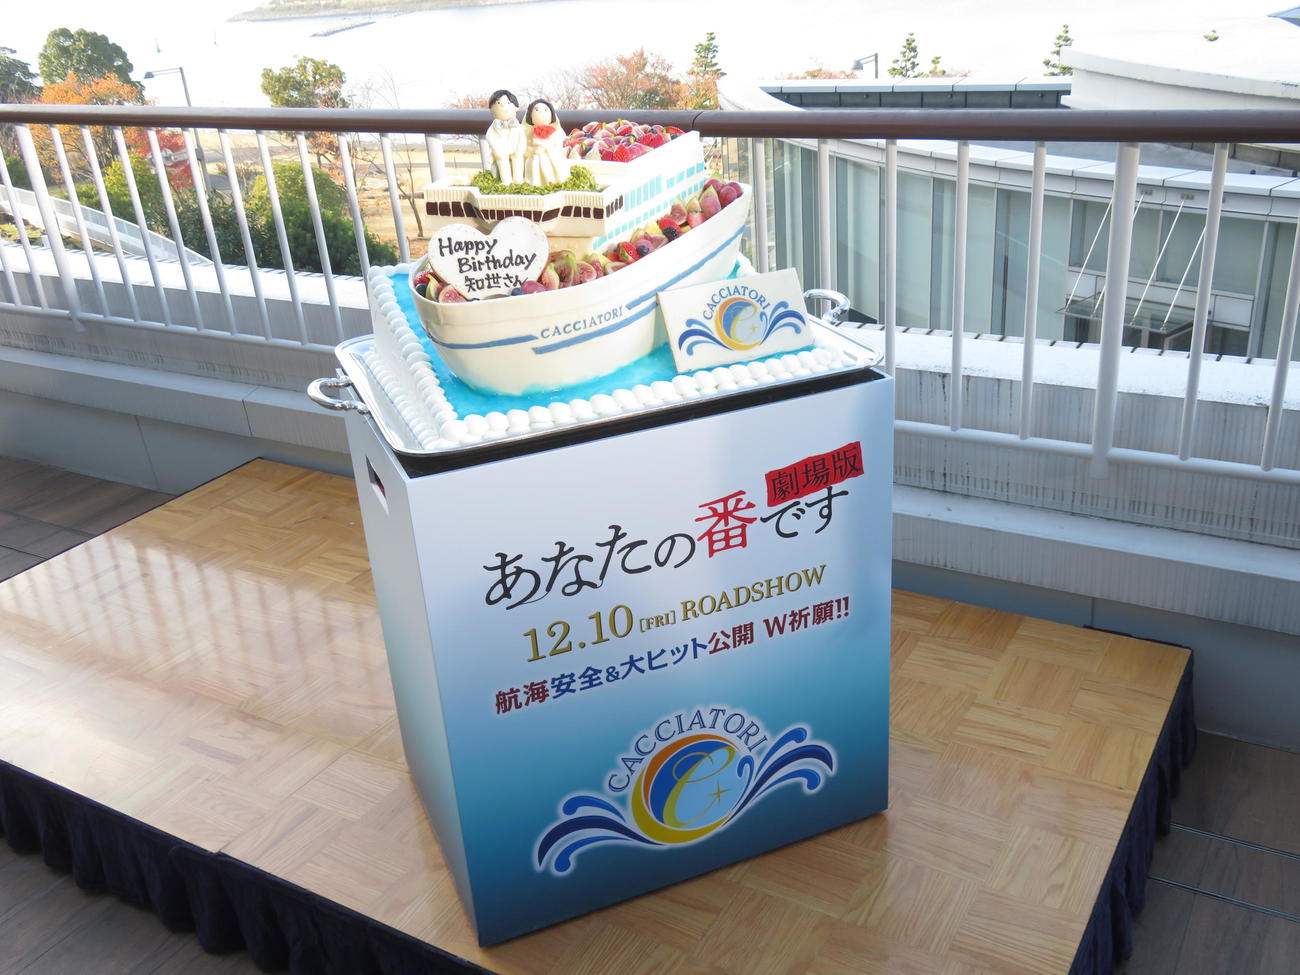 原田知世の誕生日を祝うケーキは豪華客船の形をしていた